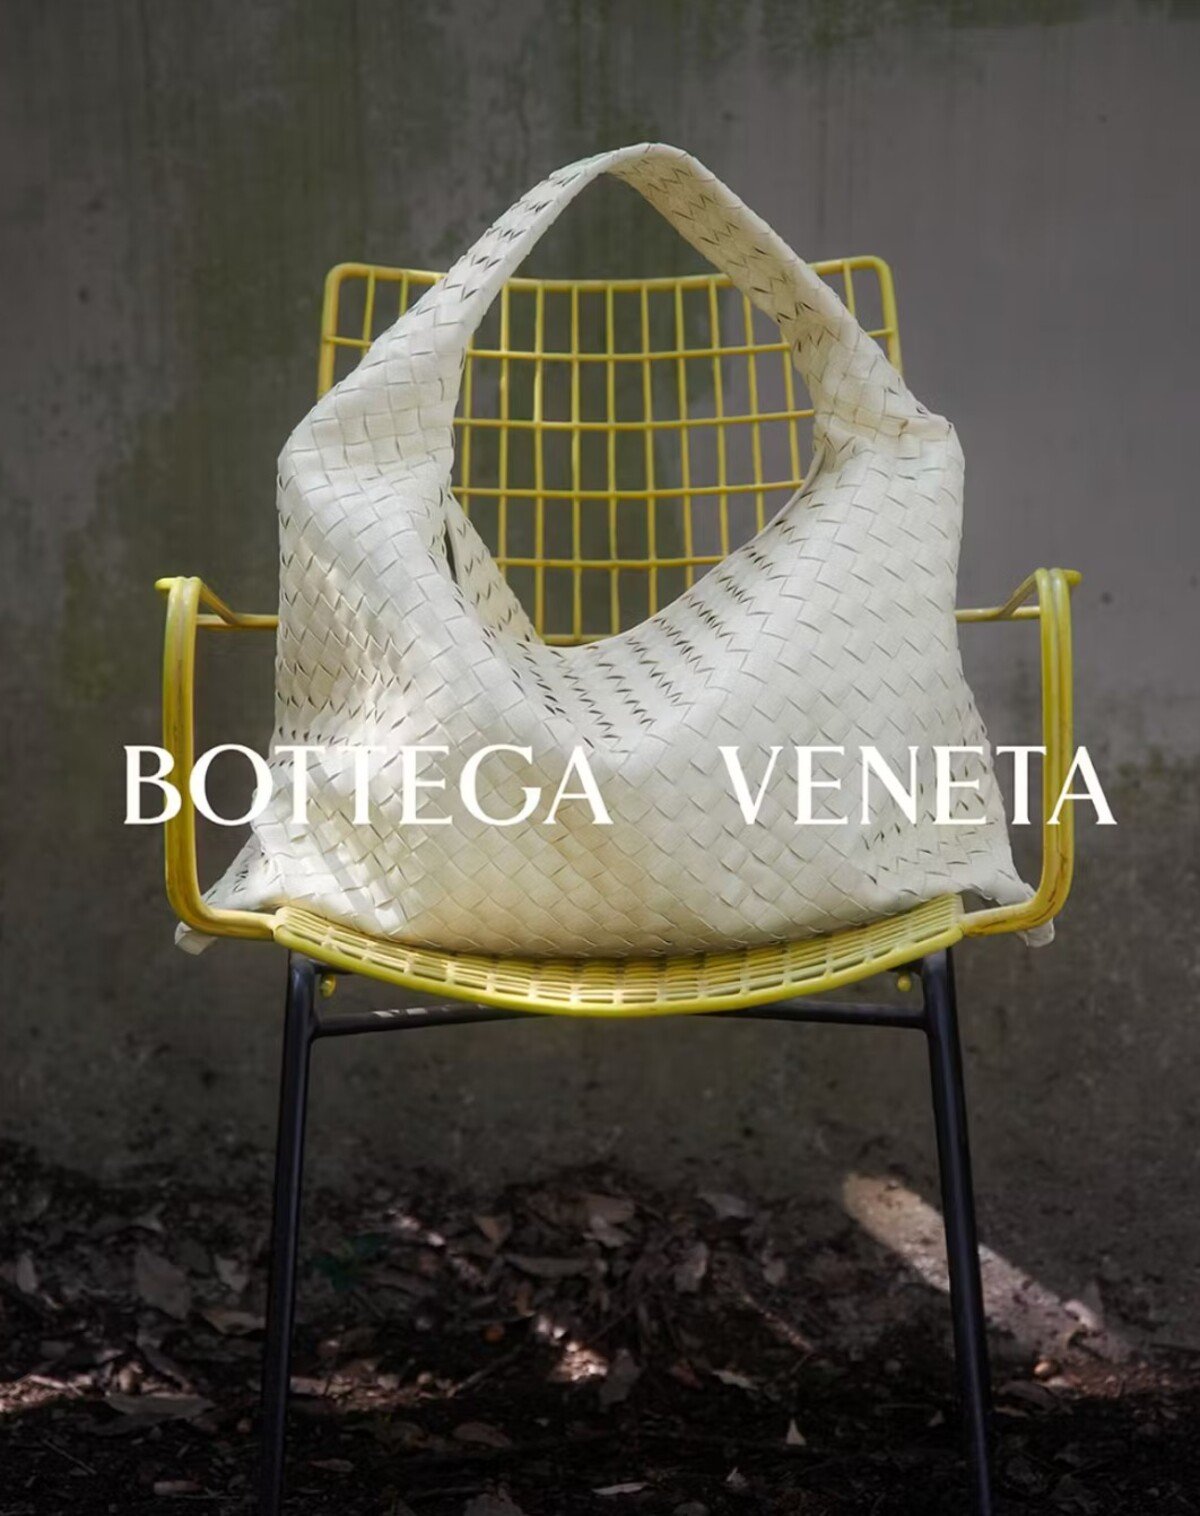 Bottega Veneta stavia na tradičnom rukopise aj experimente. Jej novinku, ktorá je inšpirovaná začiatkom milénia, budeš milovať.